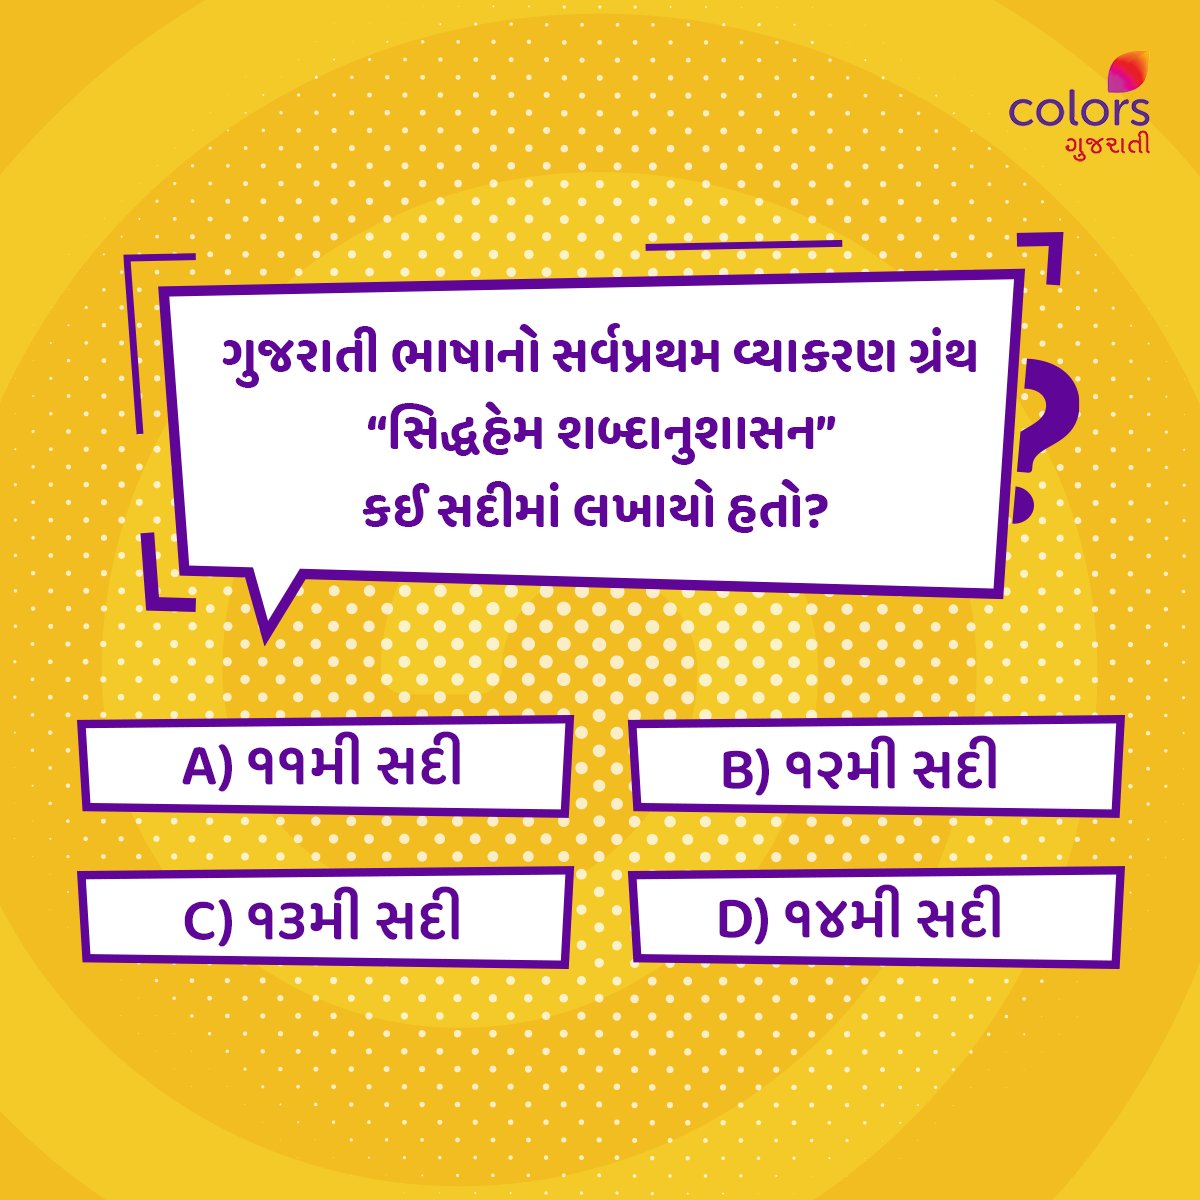 જો તમને પણ ગુજરાતી સાહિત્યનું Knowledge હોય, તો આનો જવાબ Comment માં જણાવો.👇

#Colorsgujarati #Gujarat #Quiz #Facts #generalquiz